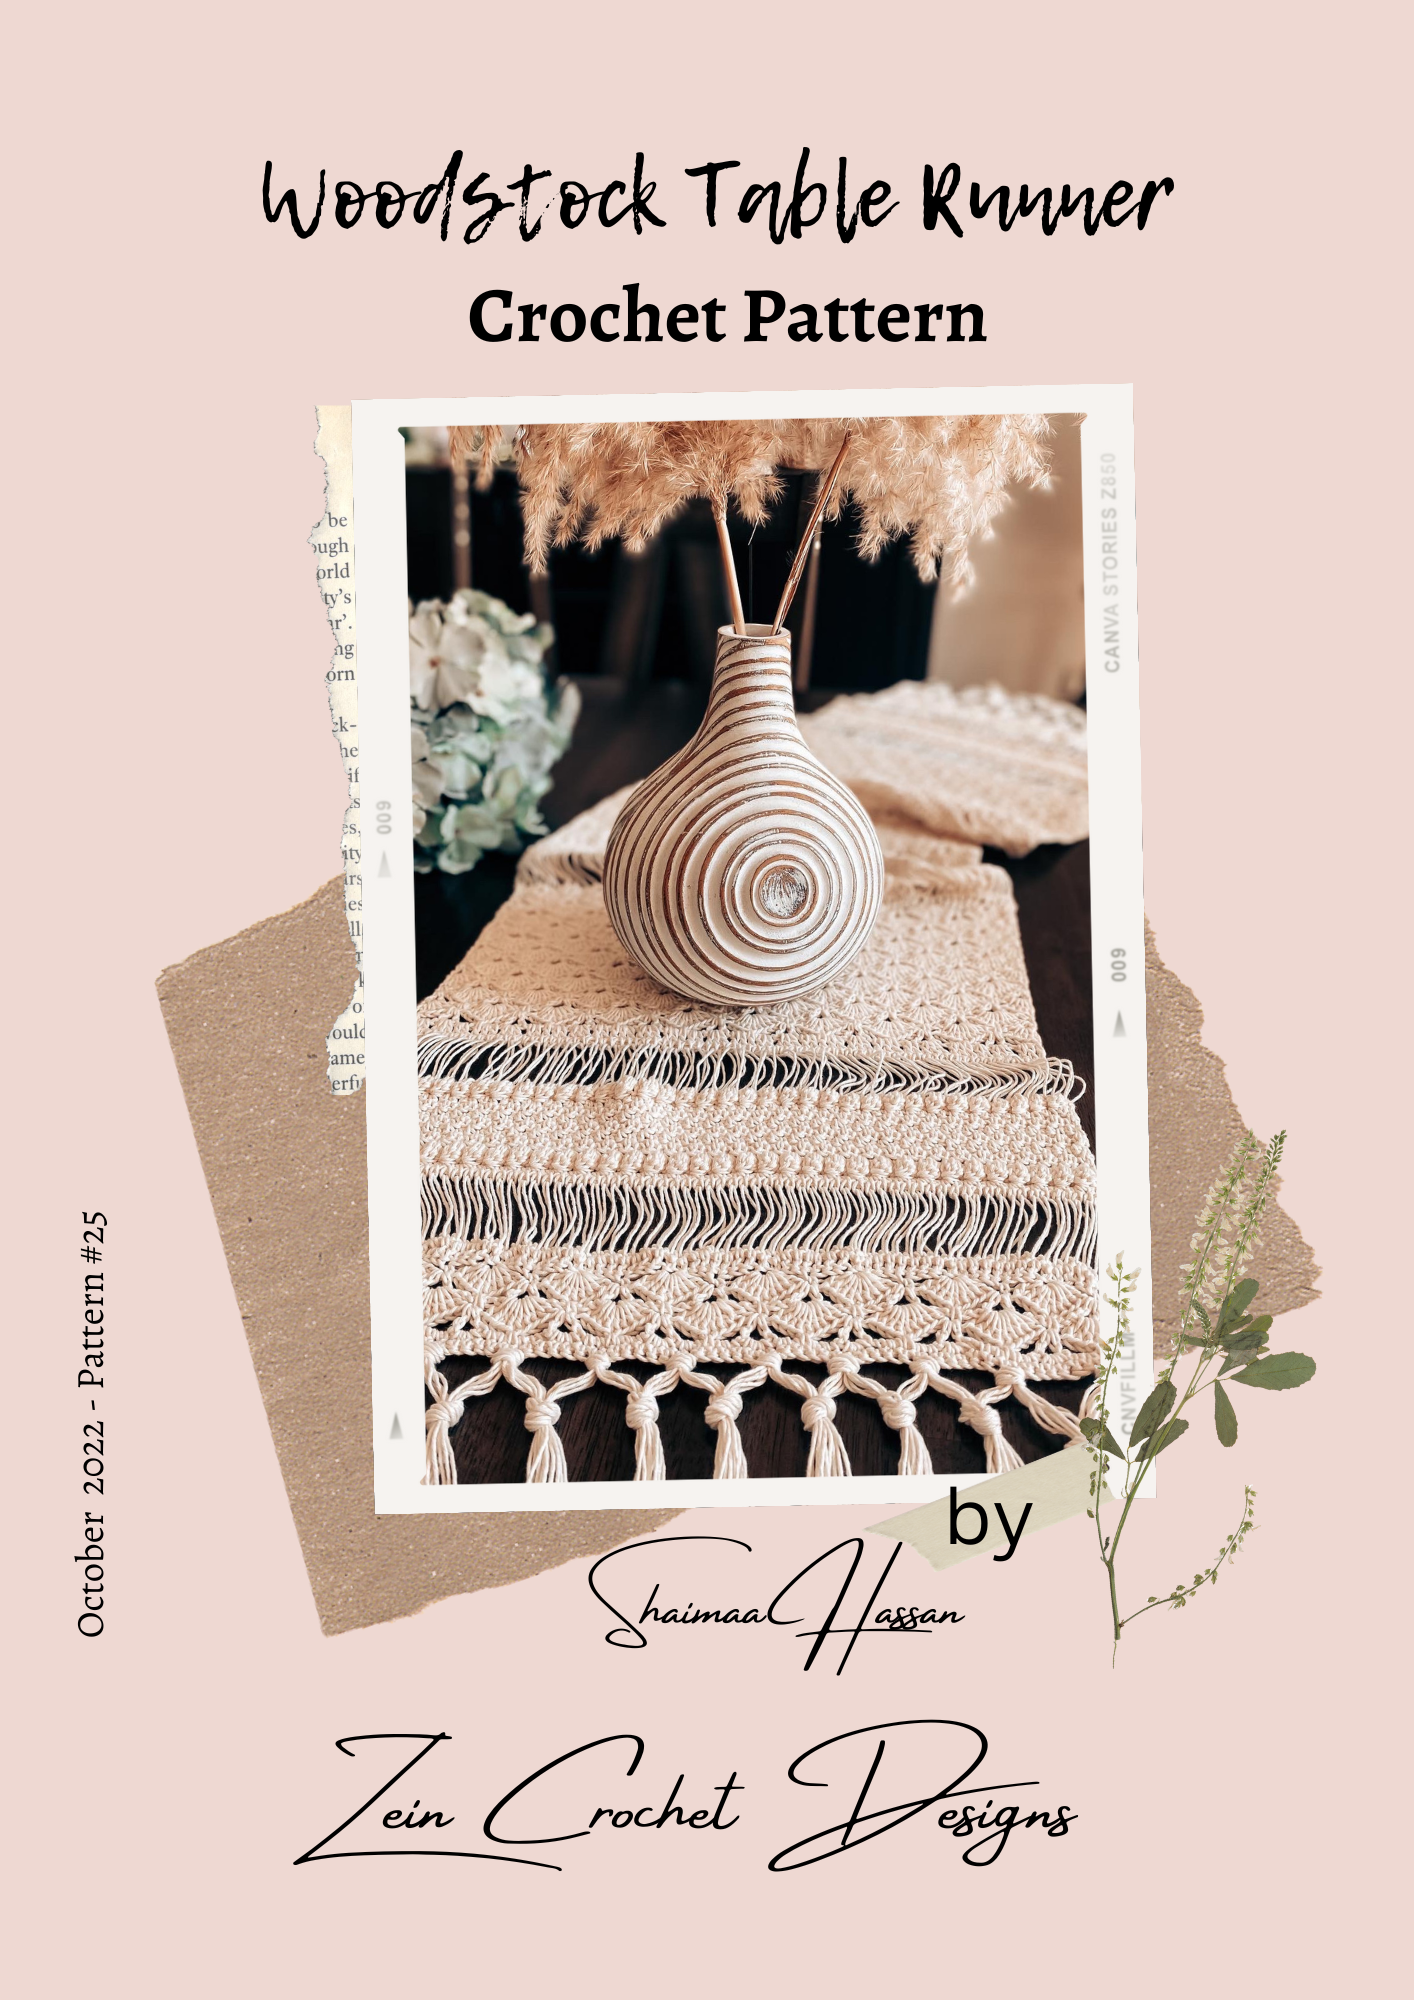 Woodstock Table Runner Crochet pattern